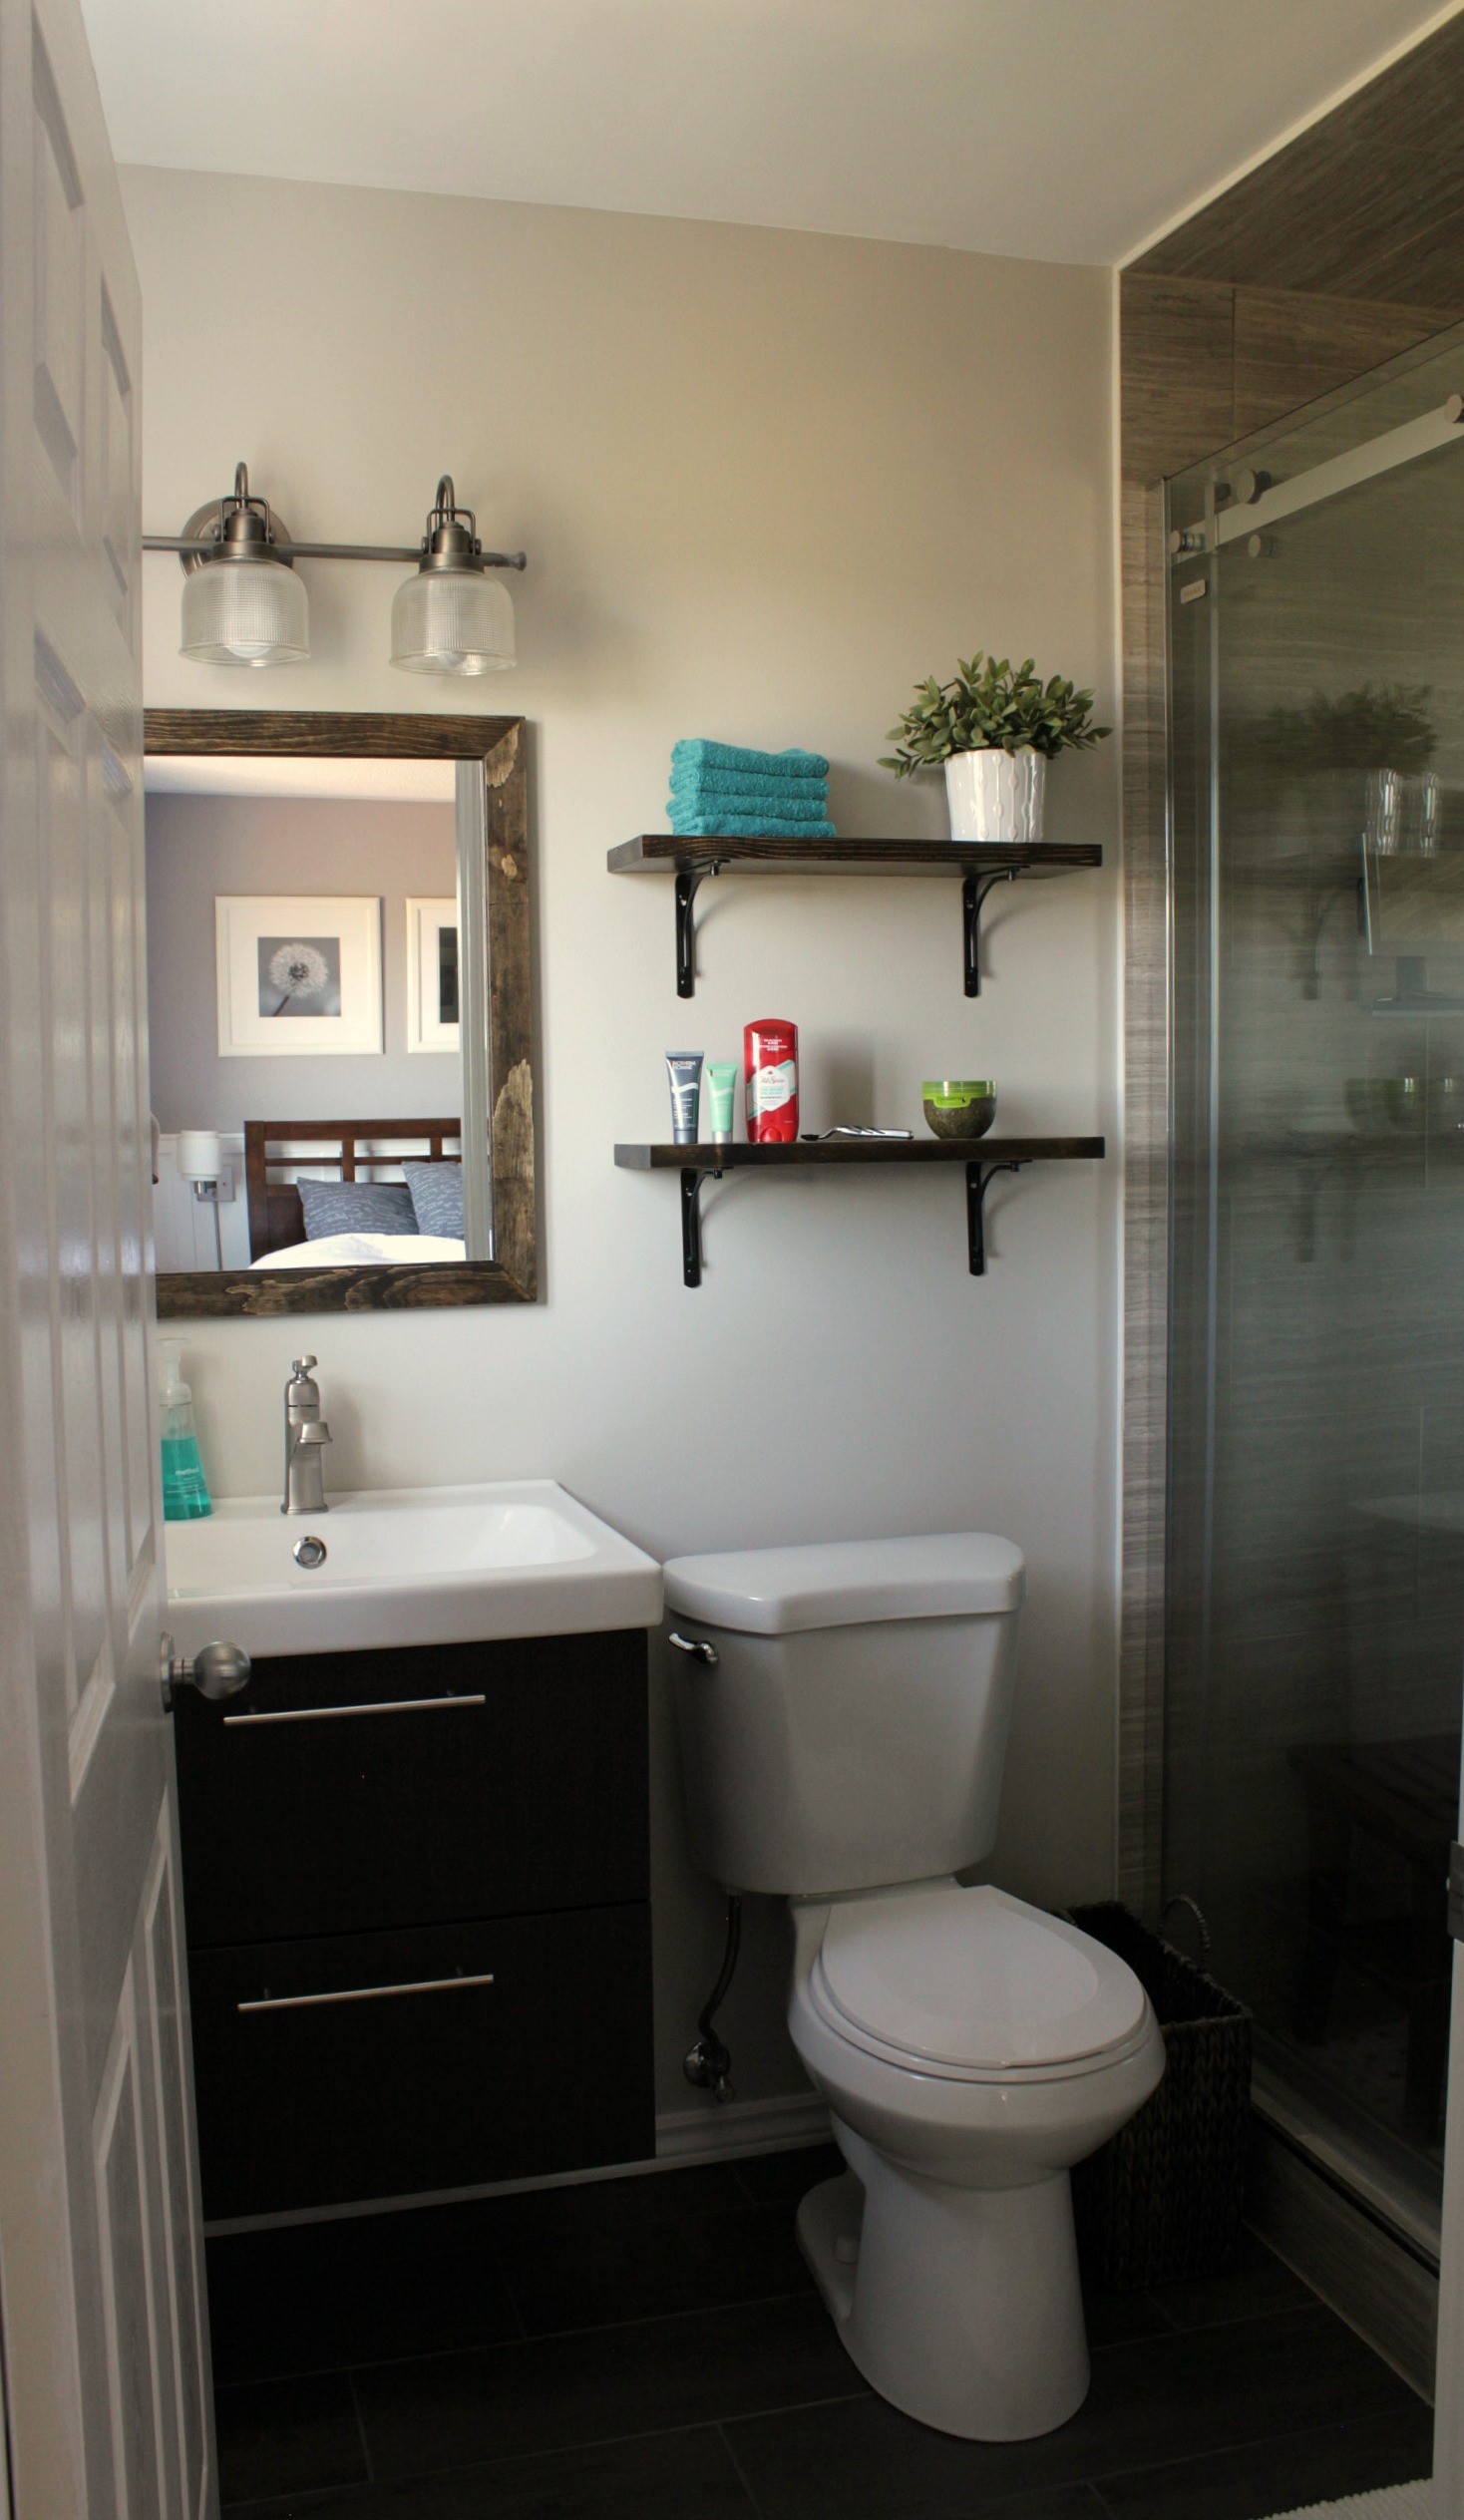 ensuite bathroom renovation tile frameless shower